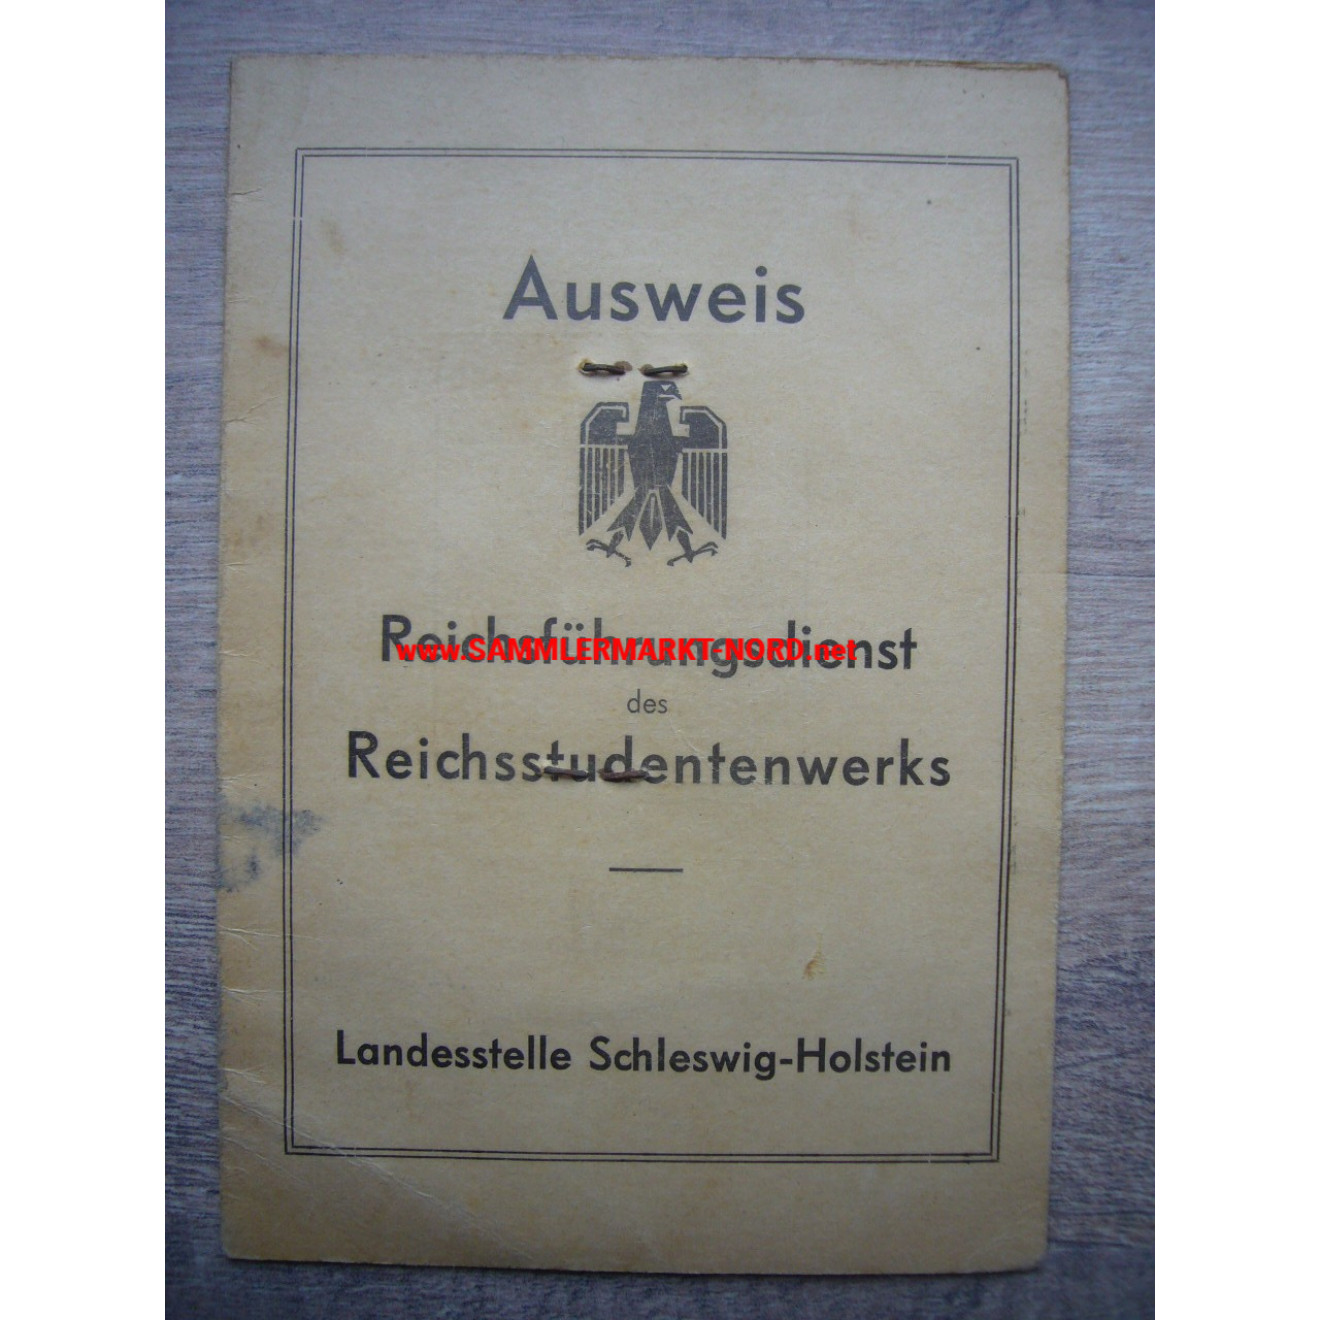 Reichsführungsdienst des Reichsstudentenwerks - Ausweis